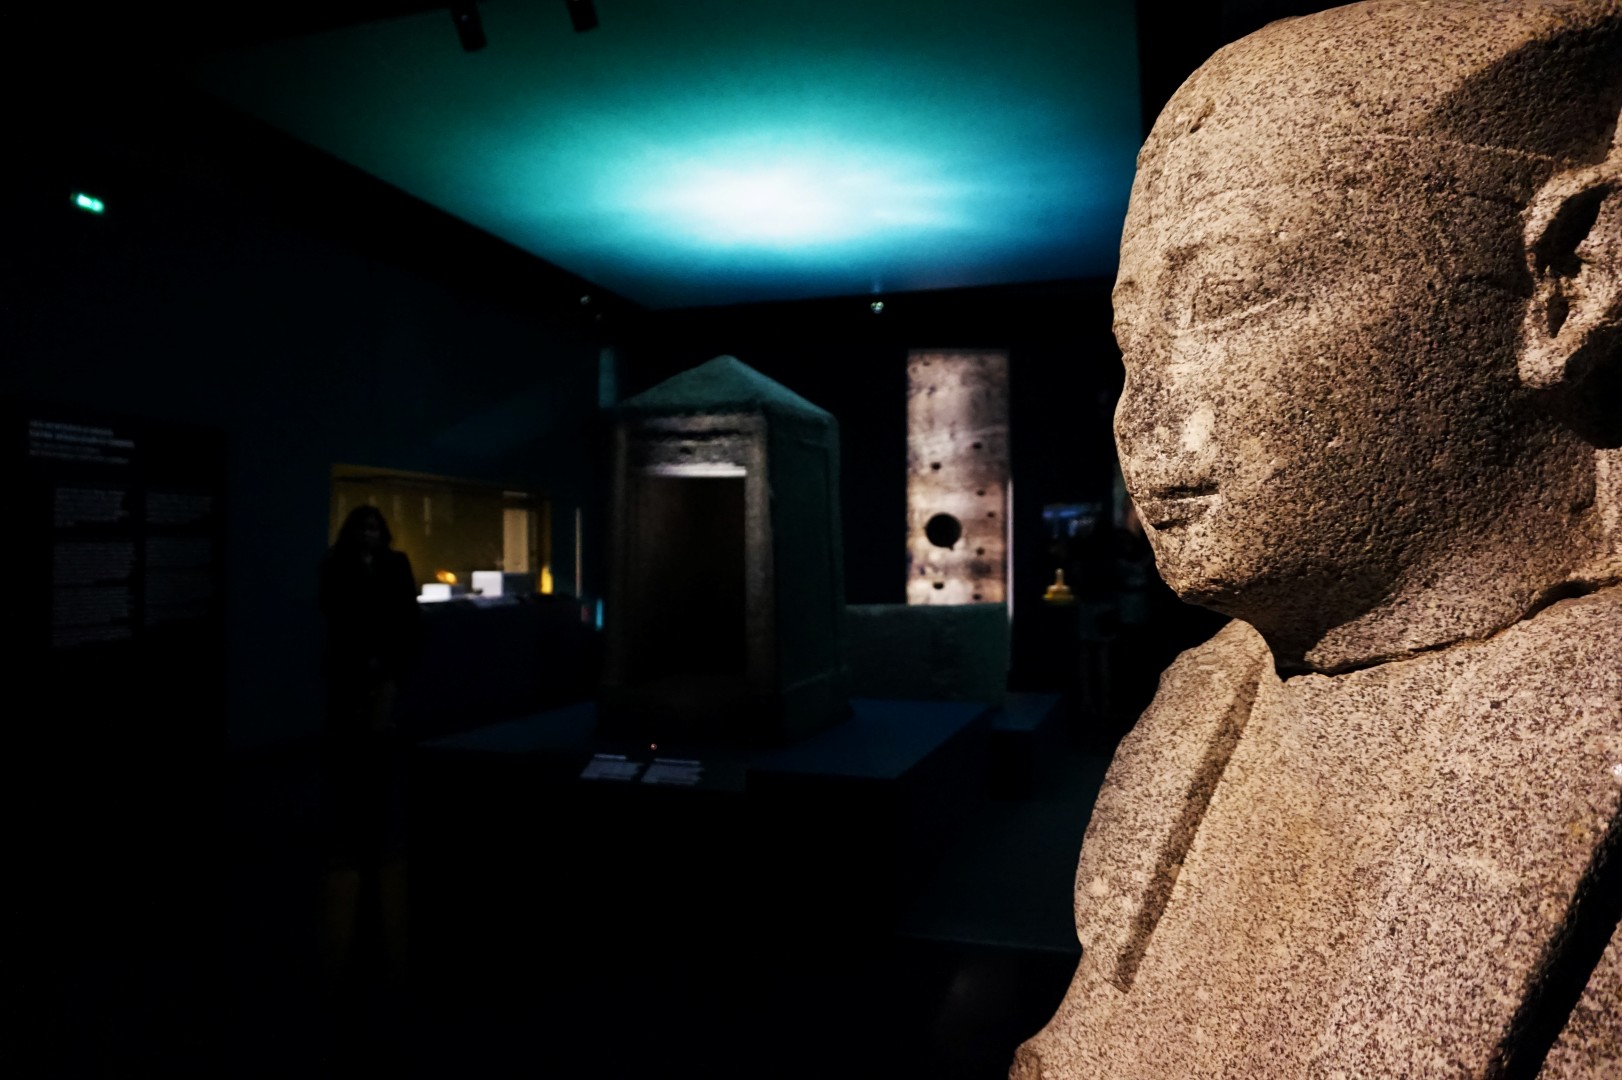 Osiris, Mystères engloutis d'Egypte - Institut du monde arabe - Paris 5e